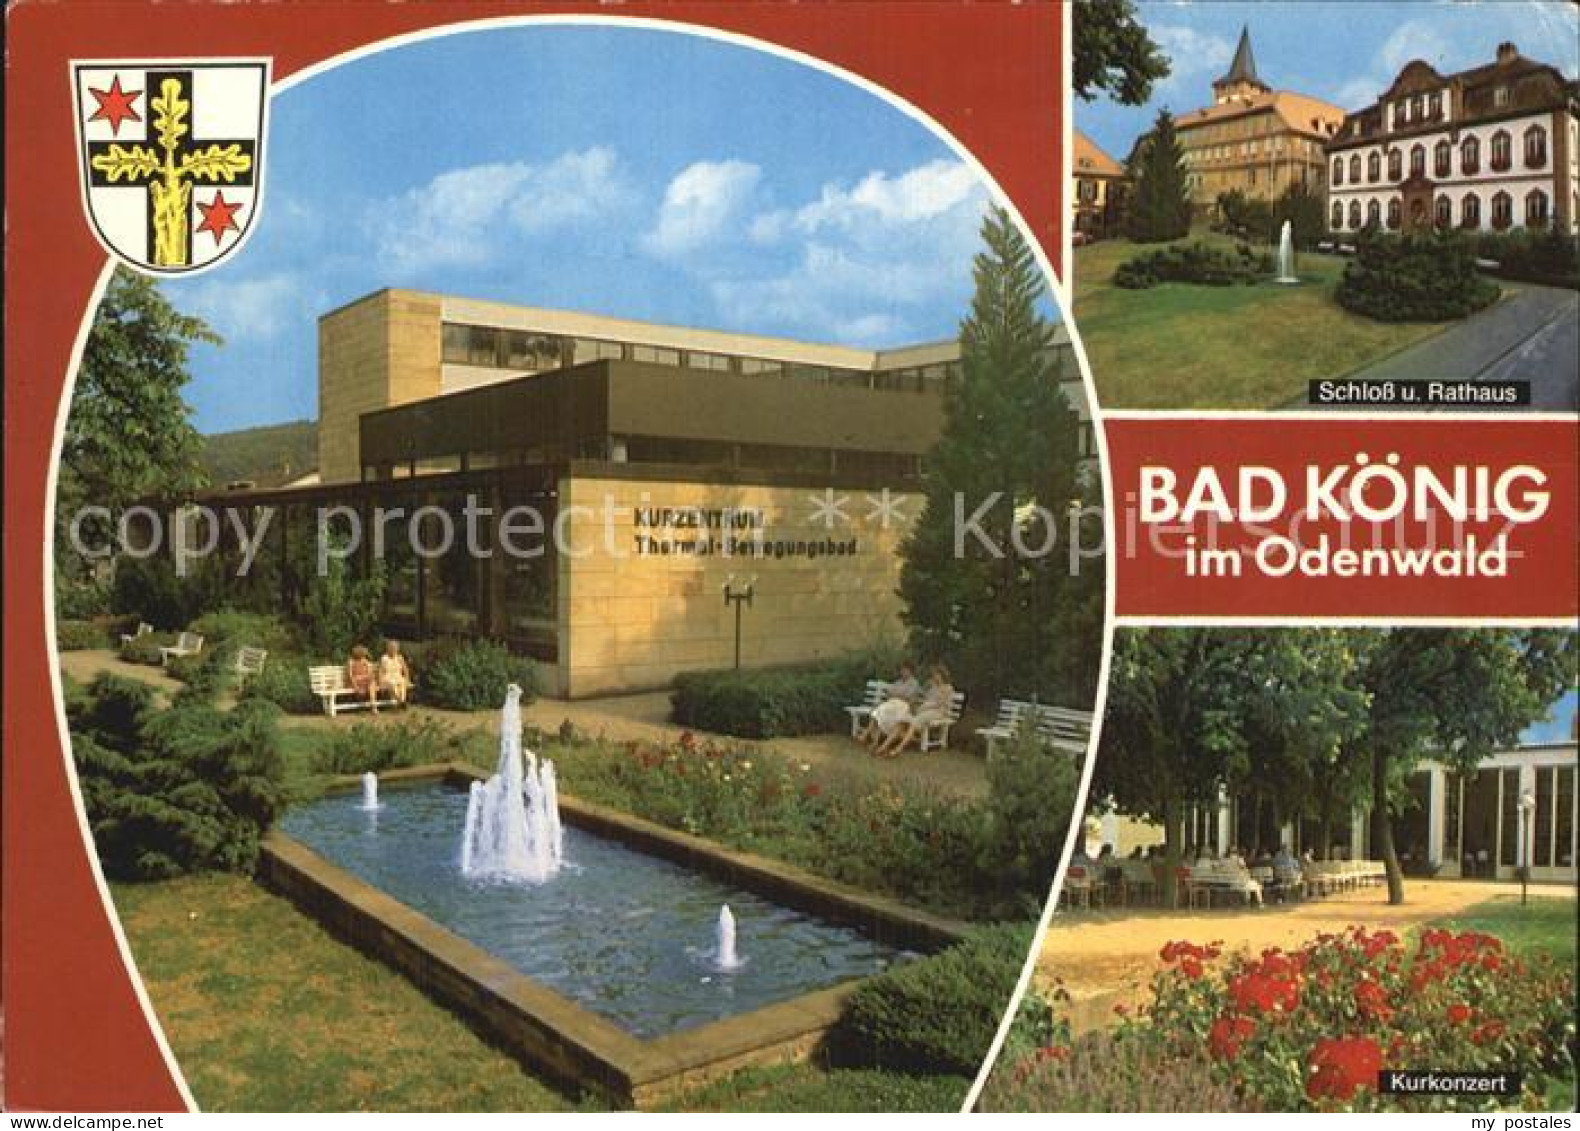 72505446 Bad Koenig Odenwald Kurzentrum Schloss Rathaus Kurkonzert Bad Koenig - Bad Koenig